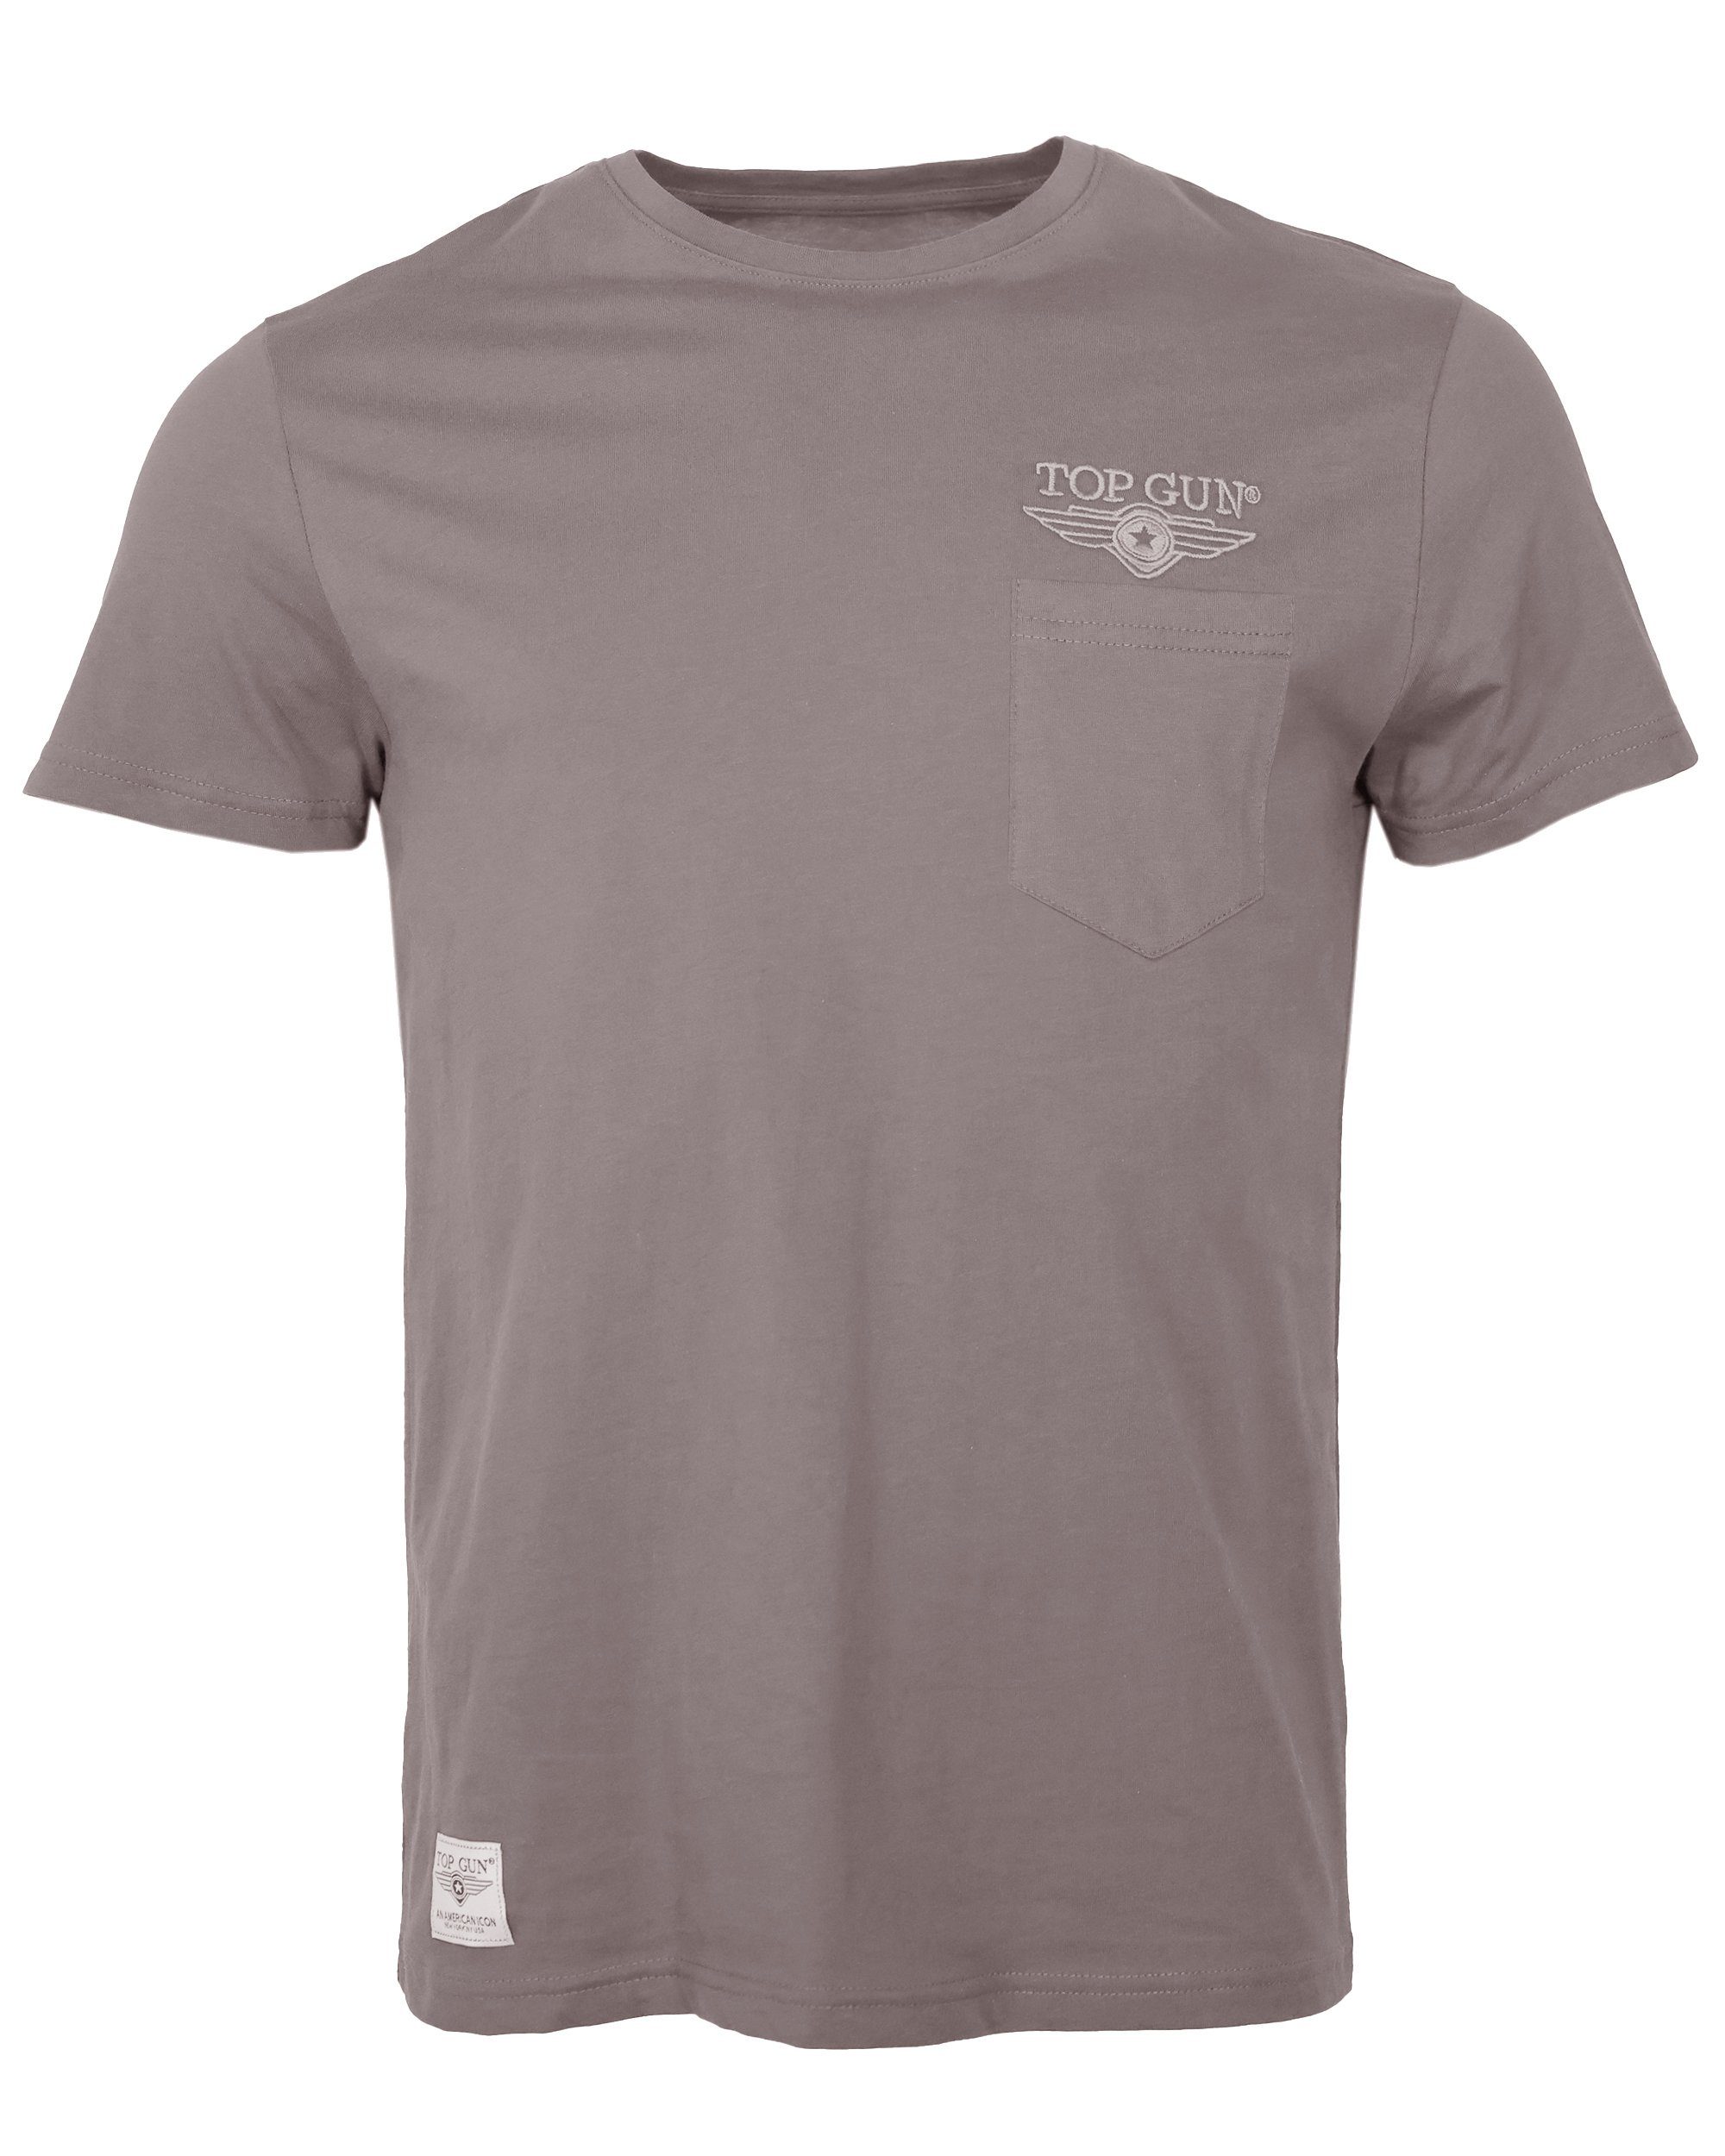 TOP GUN T-Shirt TG20213037 grey